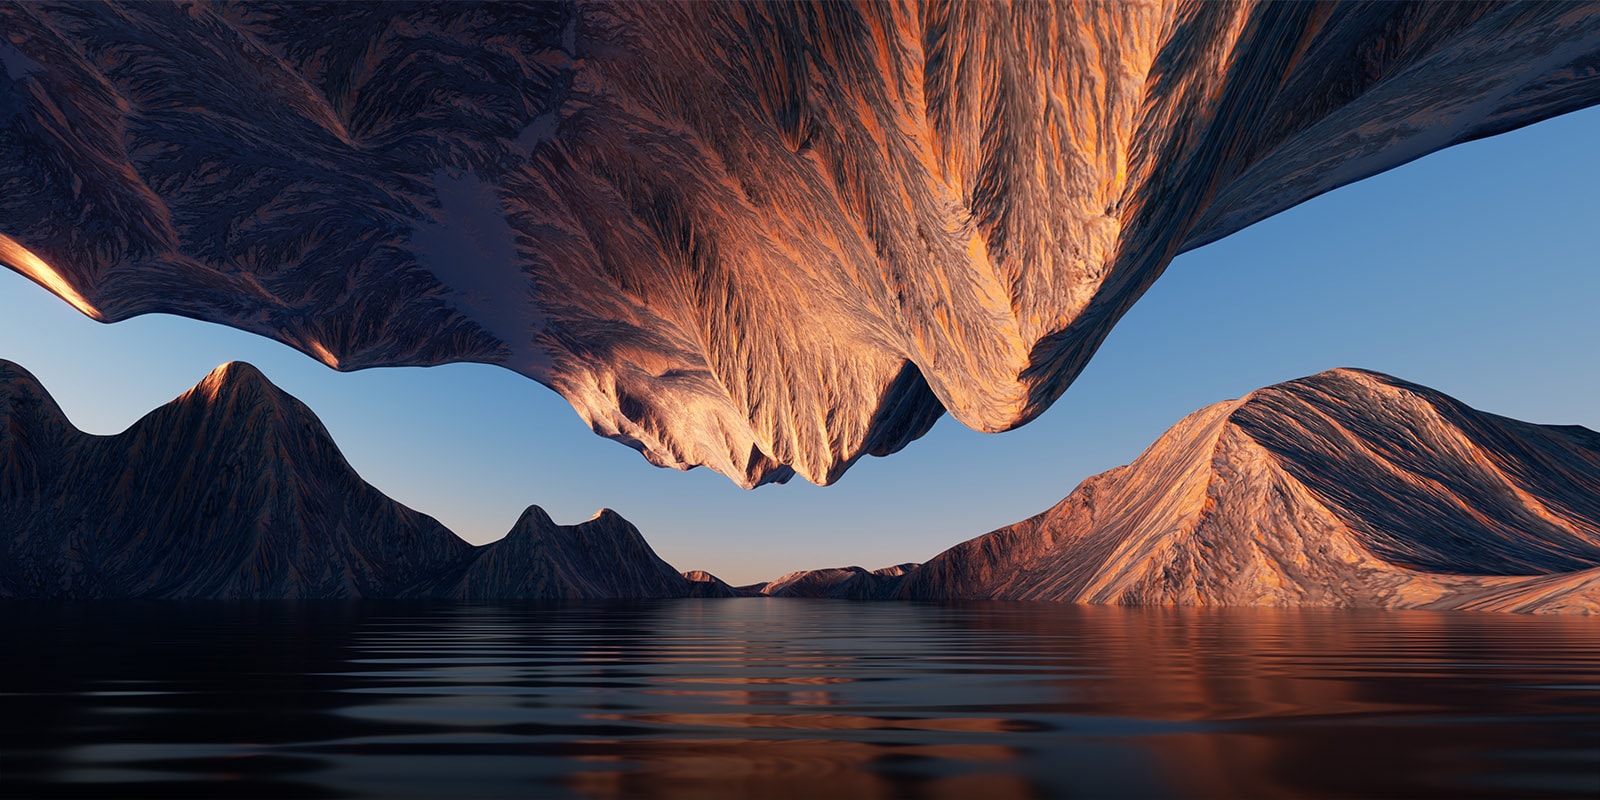 Luontokuva, jossa vuorenhuiput ovat vastakkain ylä- ja alapuolelta nähtynä, näyttää kontrastin ja yksityiskohtien tarkkuuden.